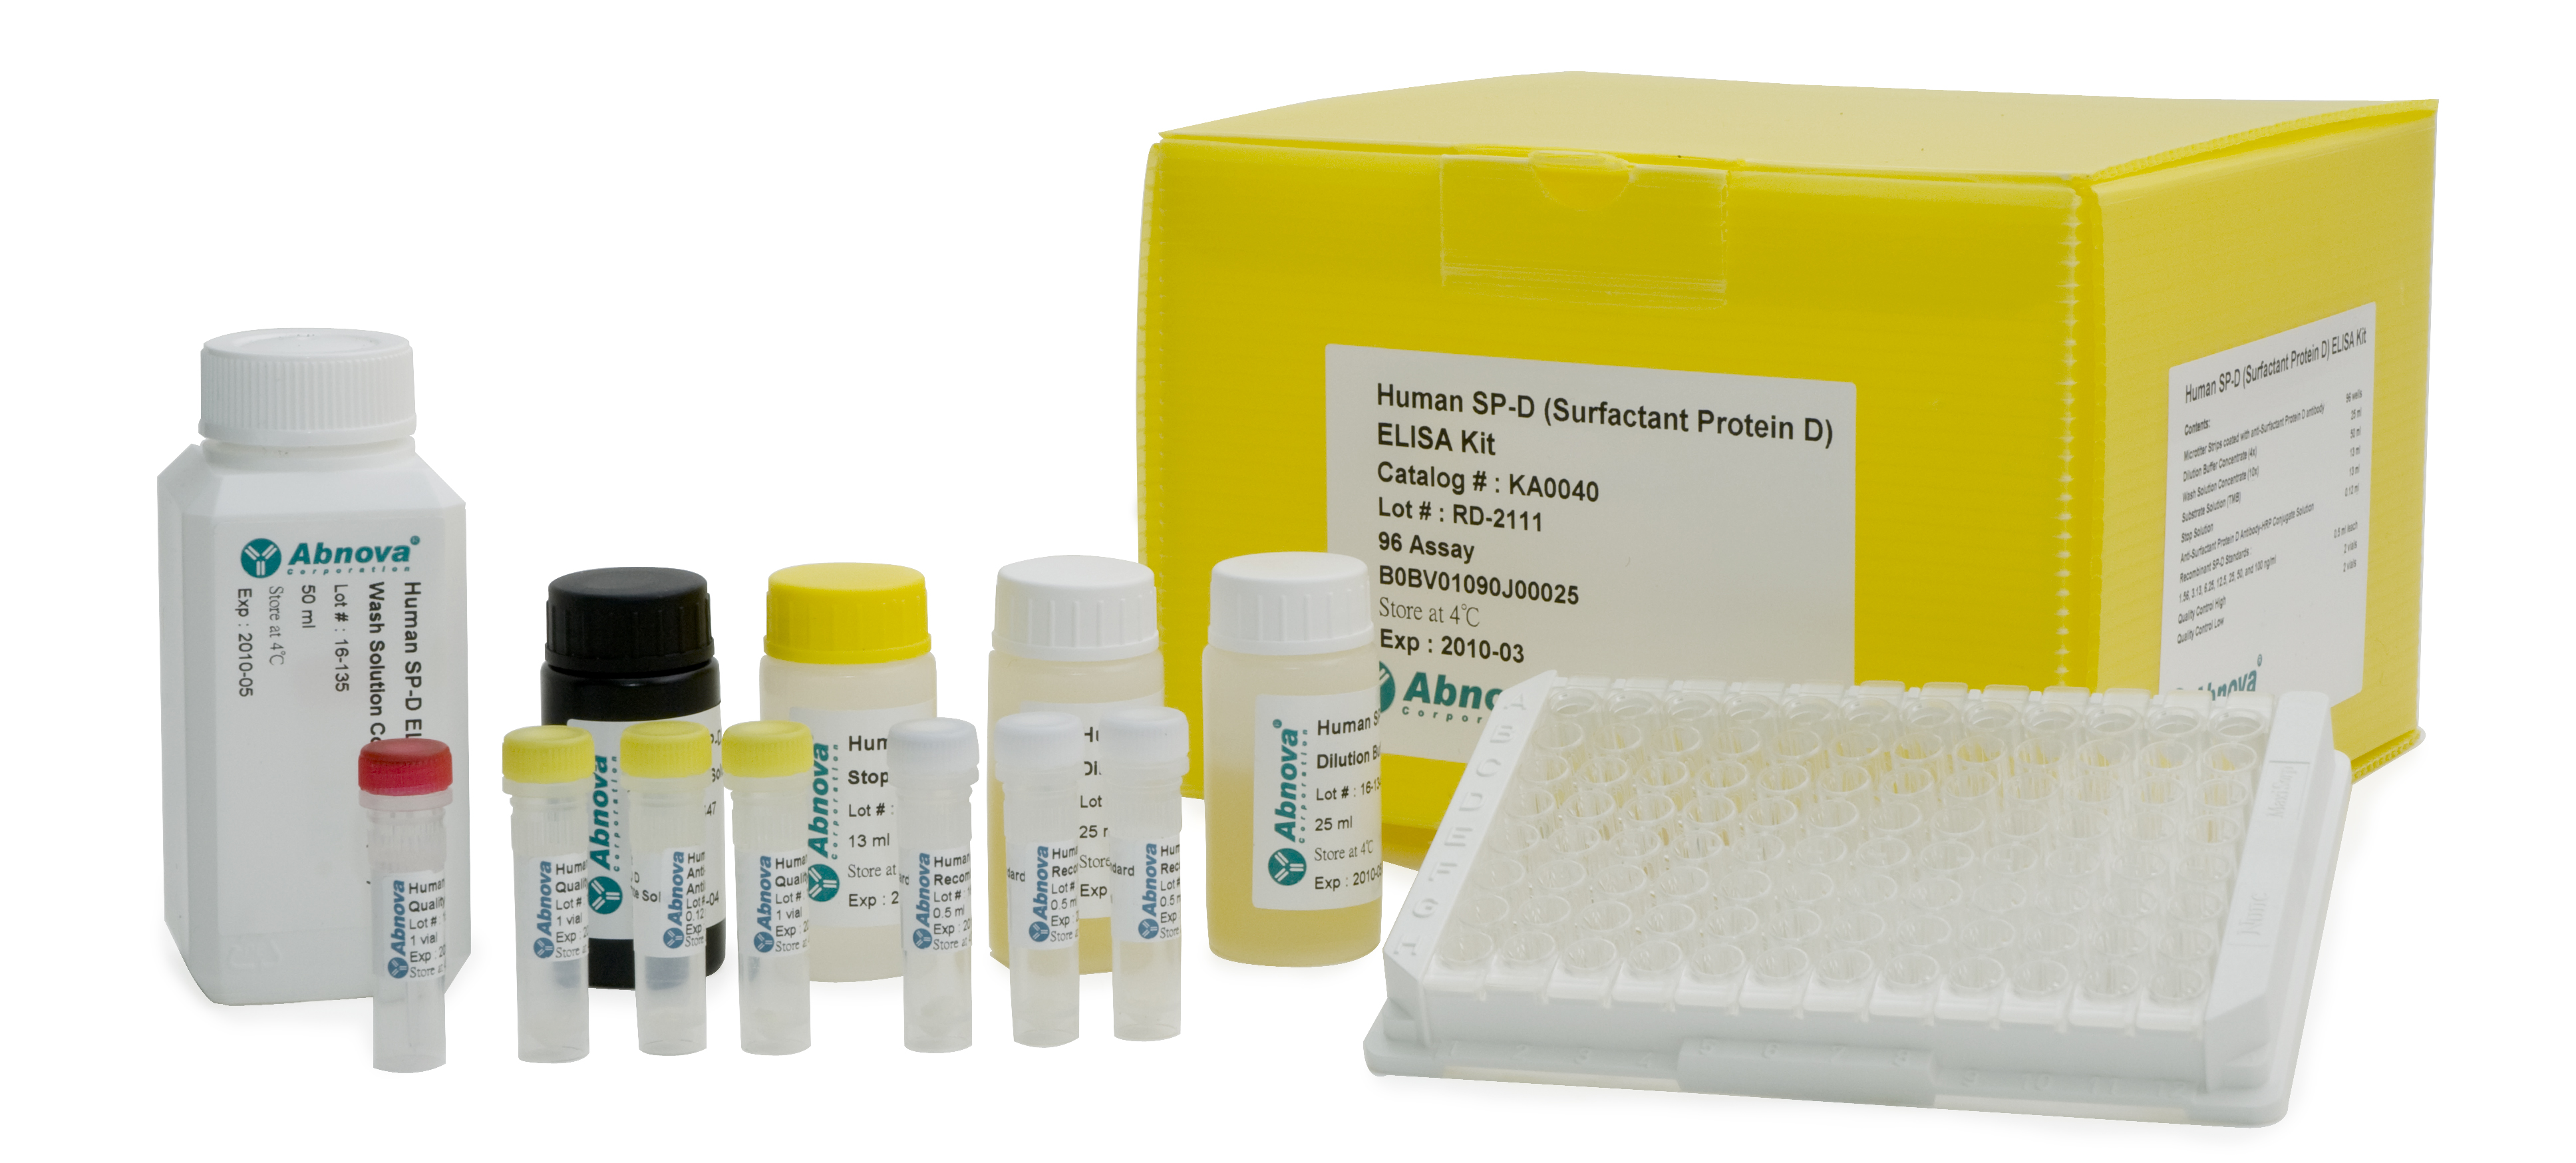 糖尿病研究检测试剂盒—Collagen IV、Albumin、NPHS1、PODXL等指标